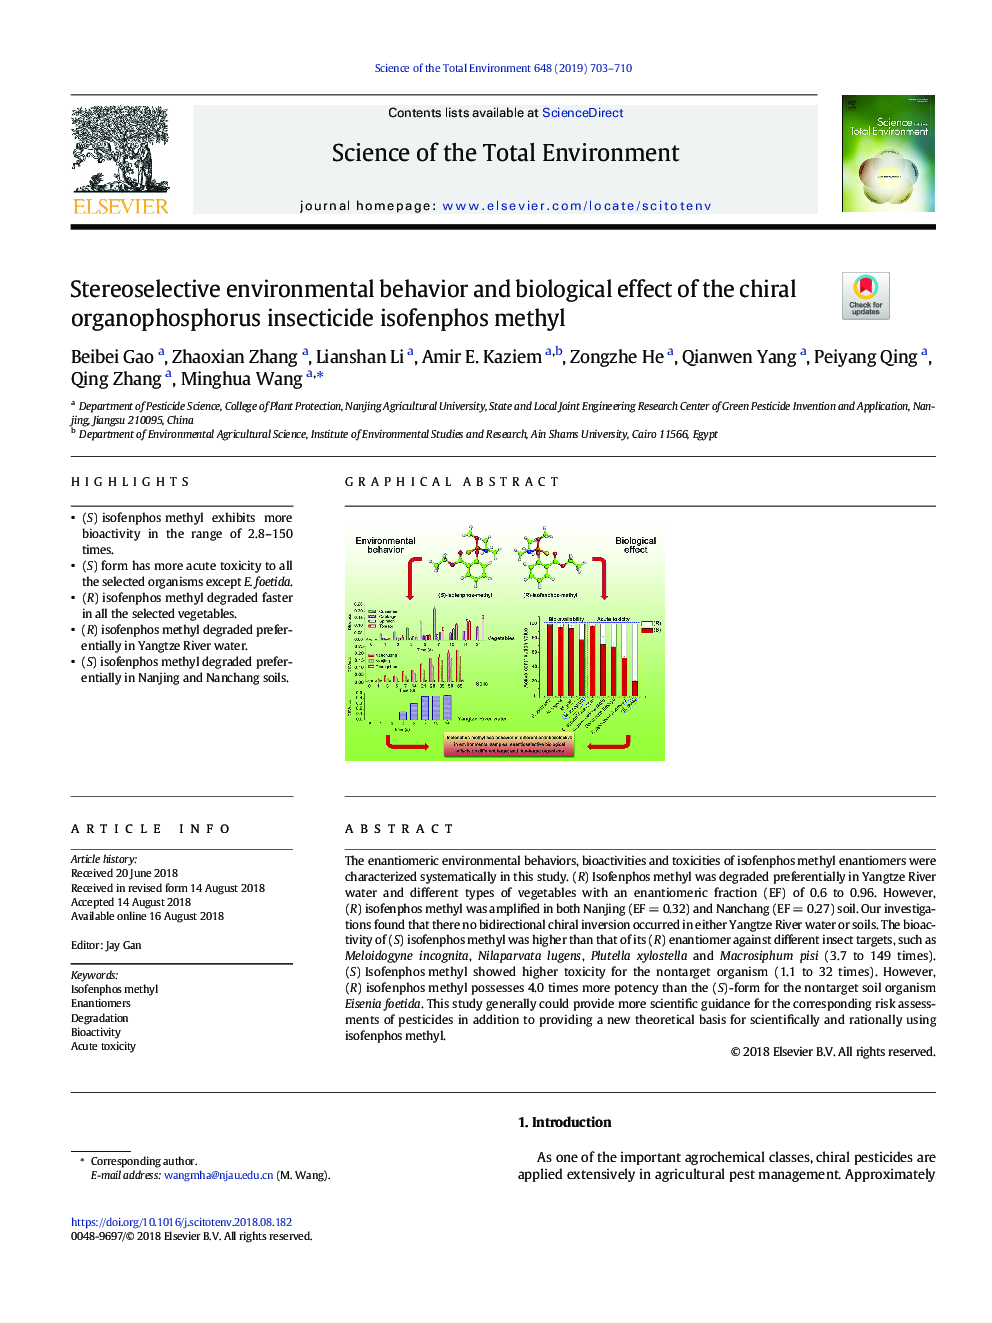 رفتار محیطی استروئیدی و اثر بیولوژیک حشرهکش ارگانوفسفره کیرال ایزوفنفوس آکاآ متیل